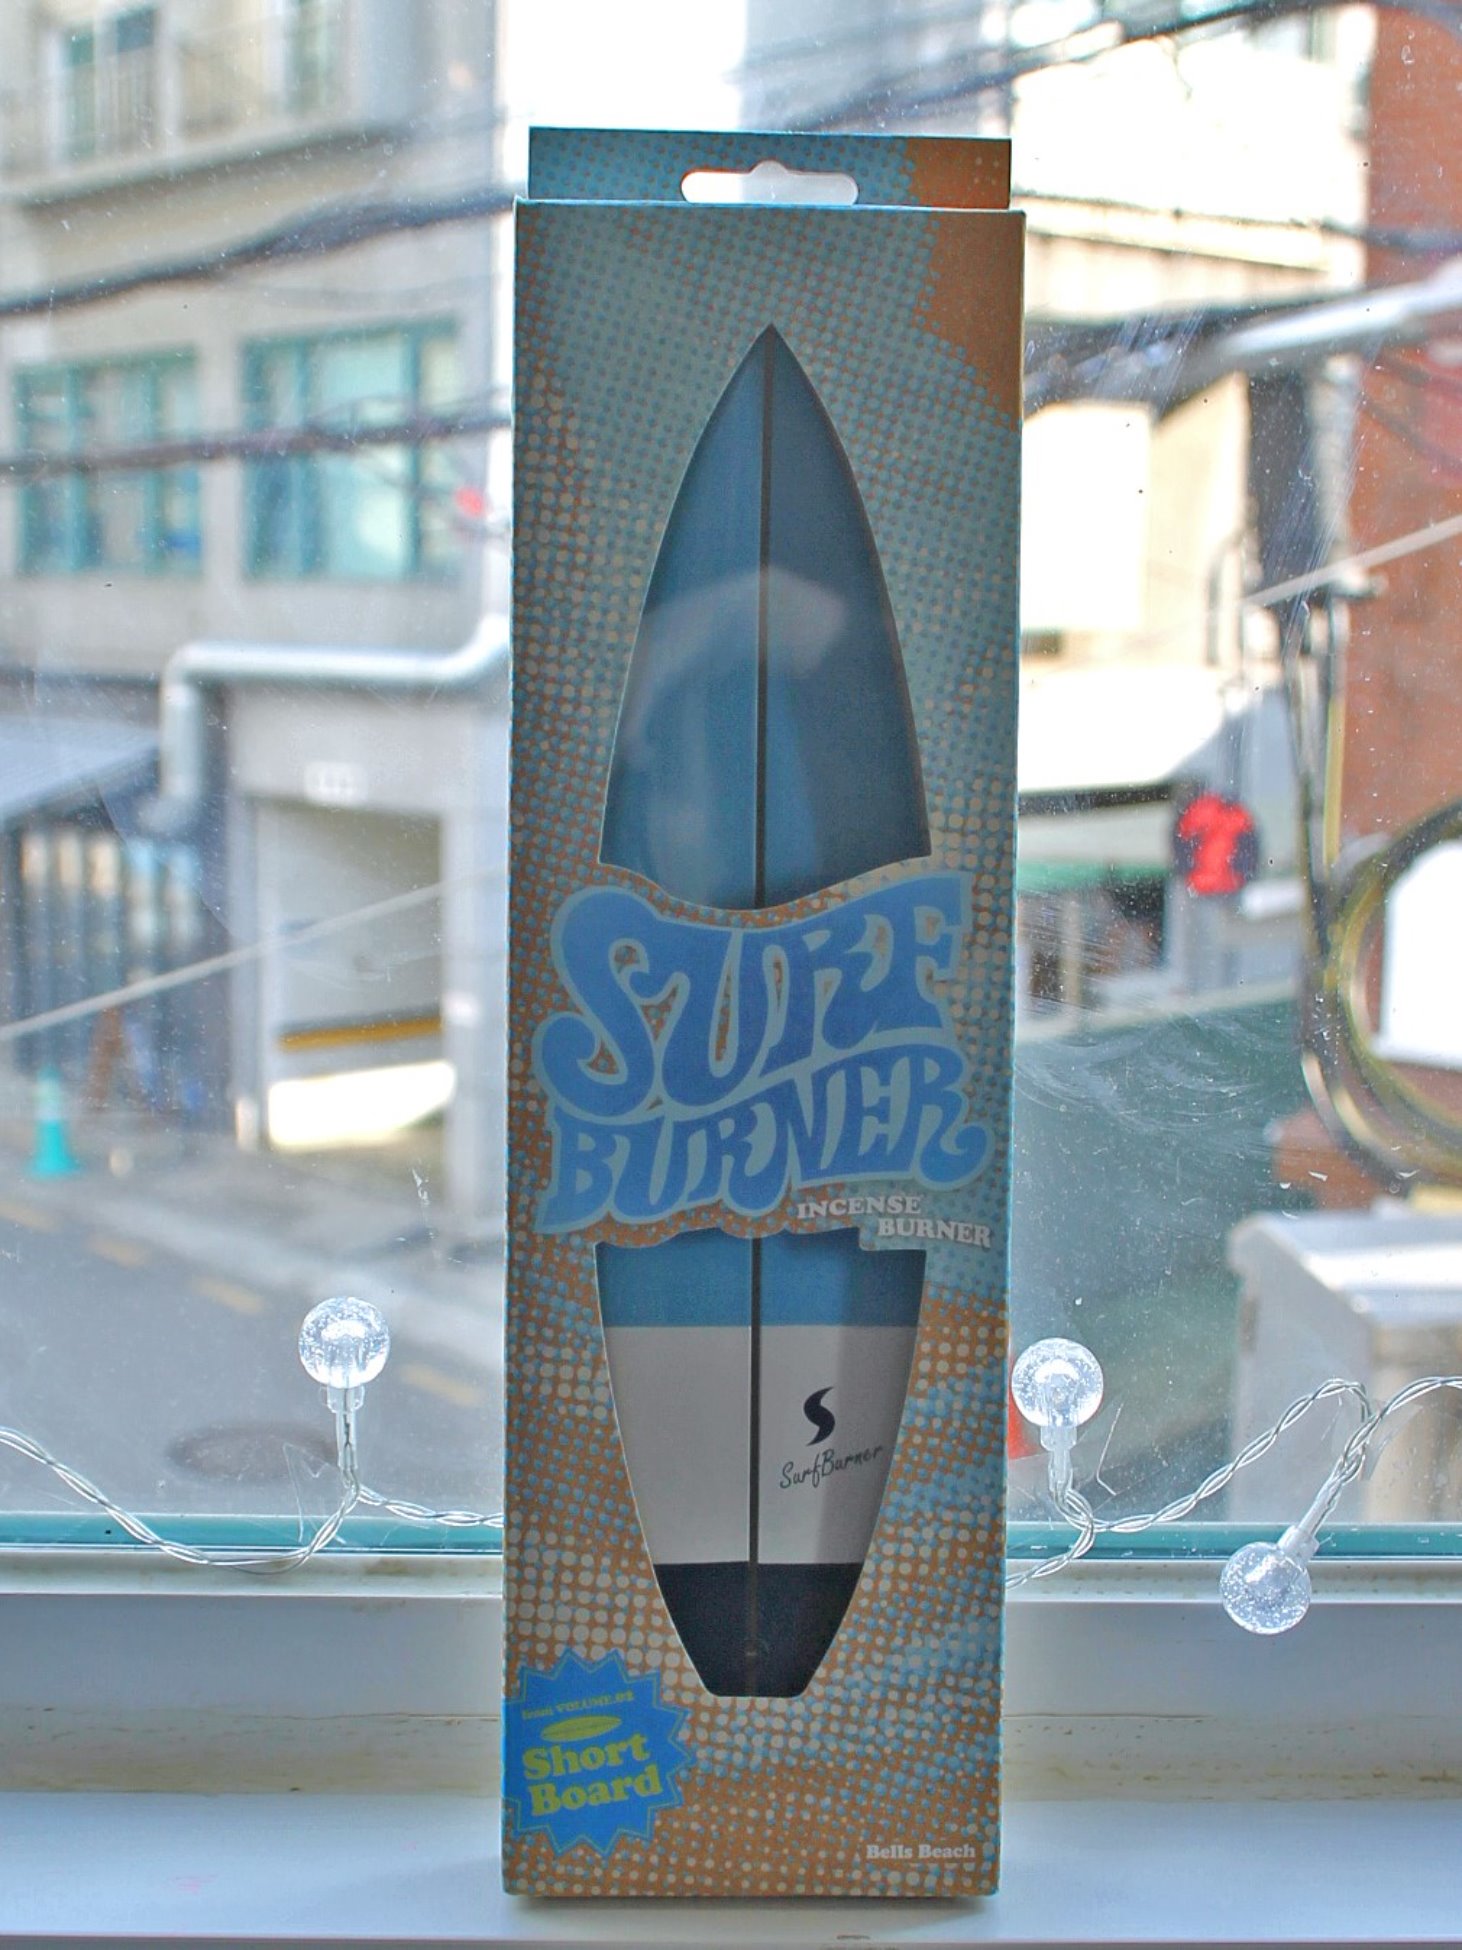 [SURF BURNER] Incense Burner - Short Board (Bells Beach)